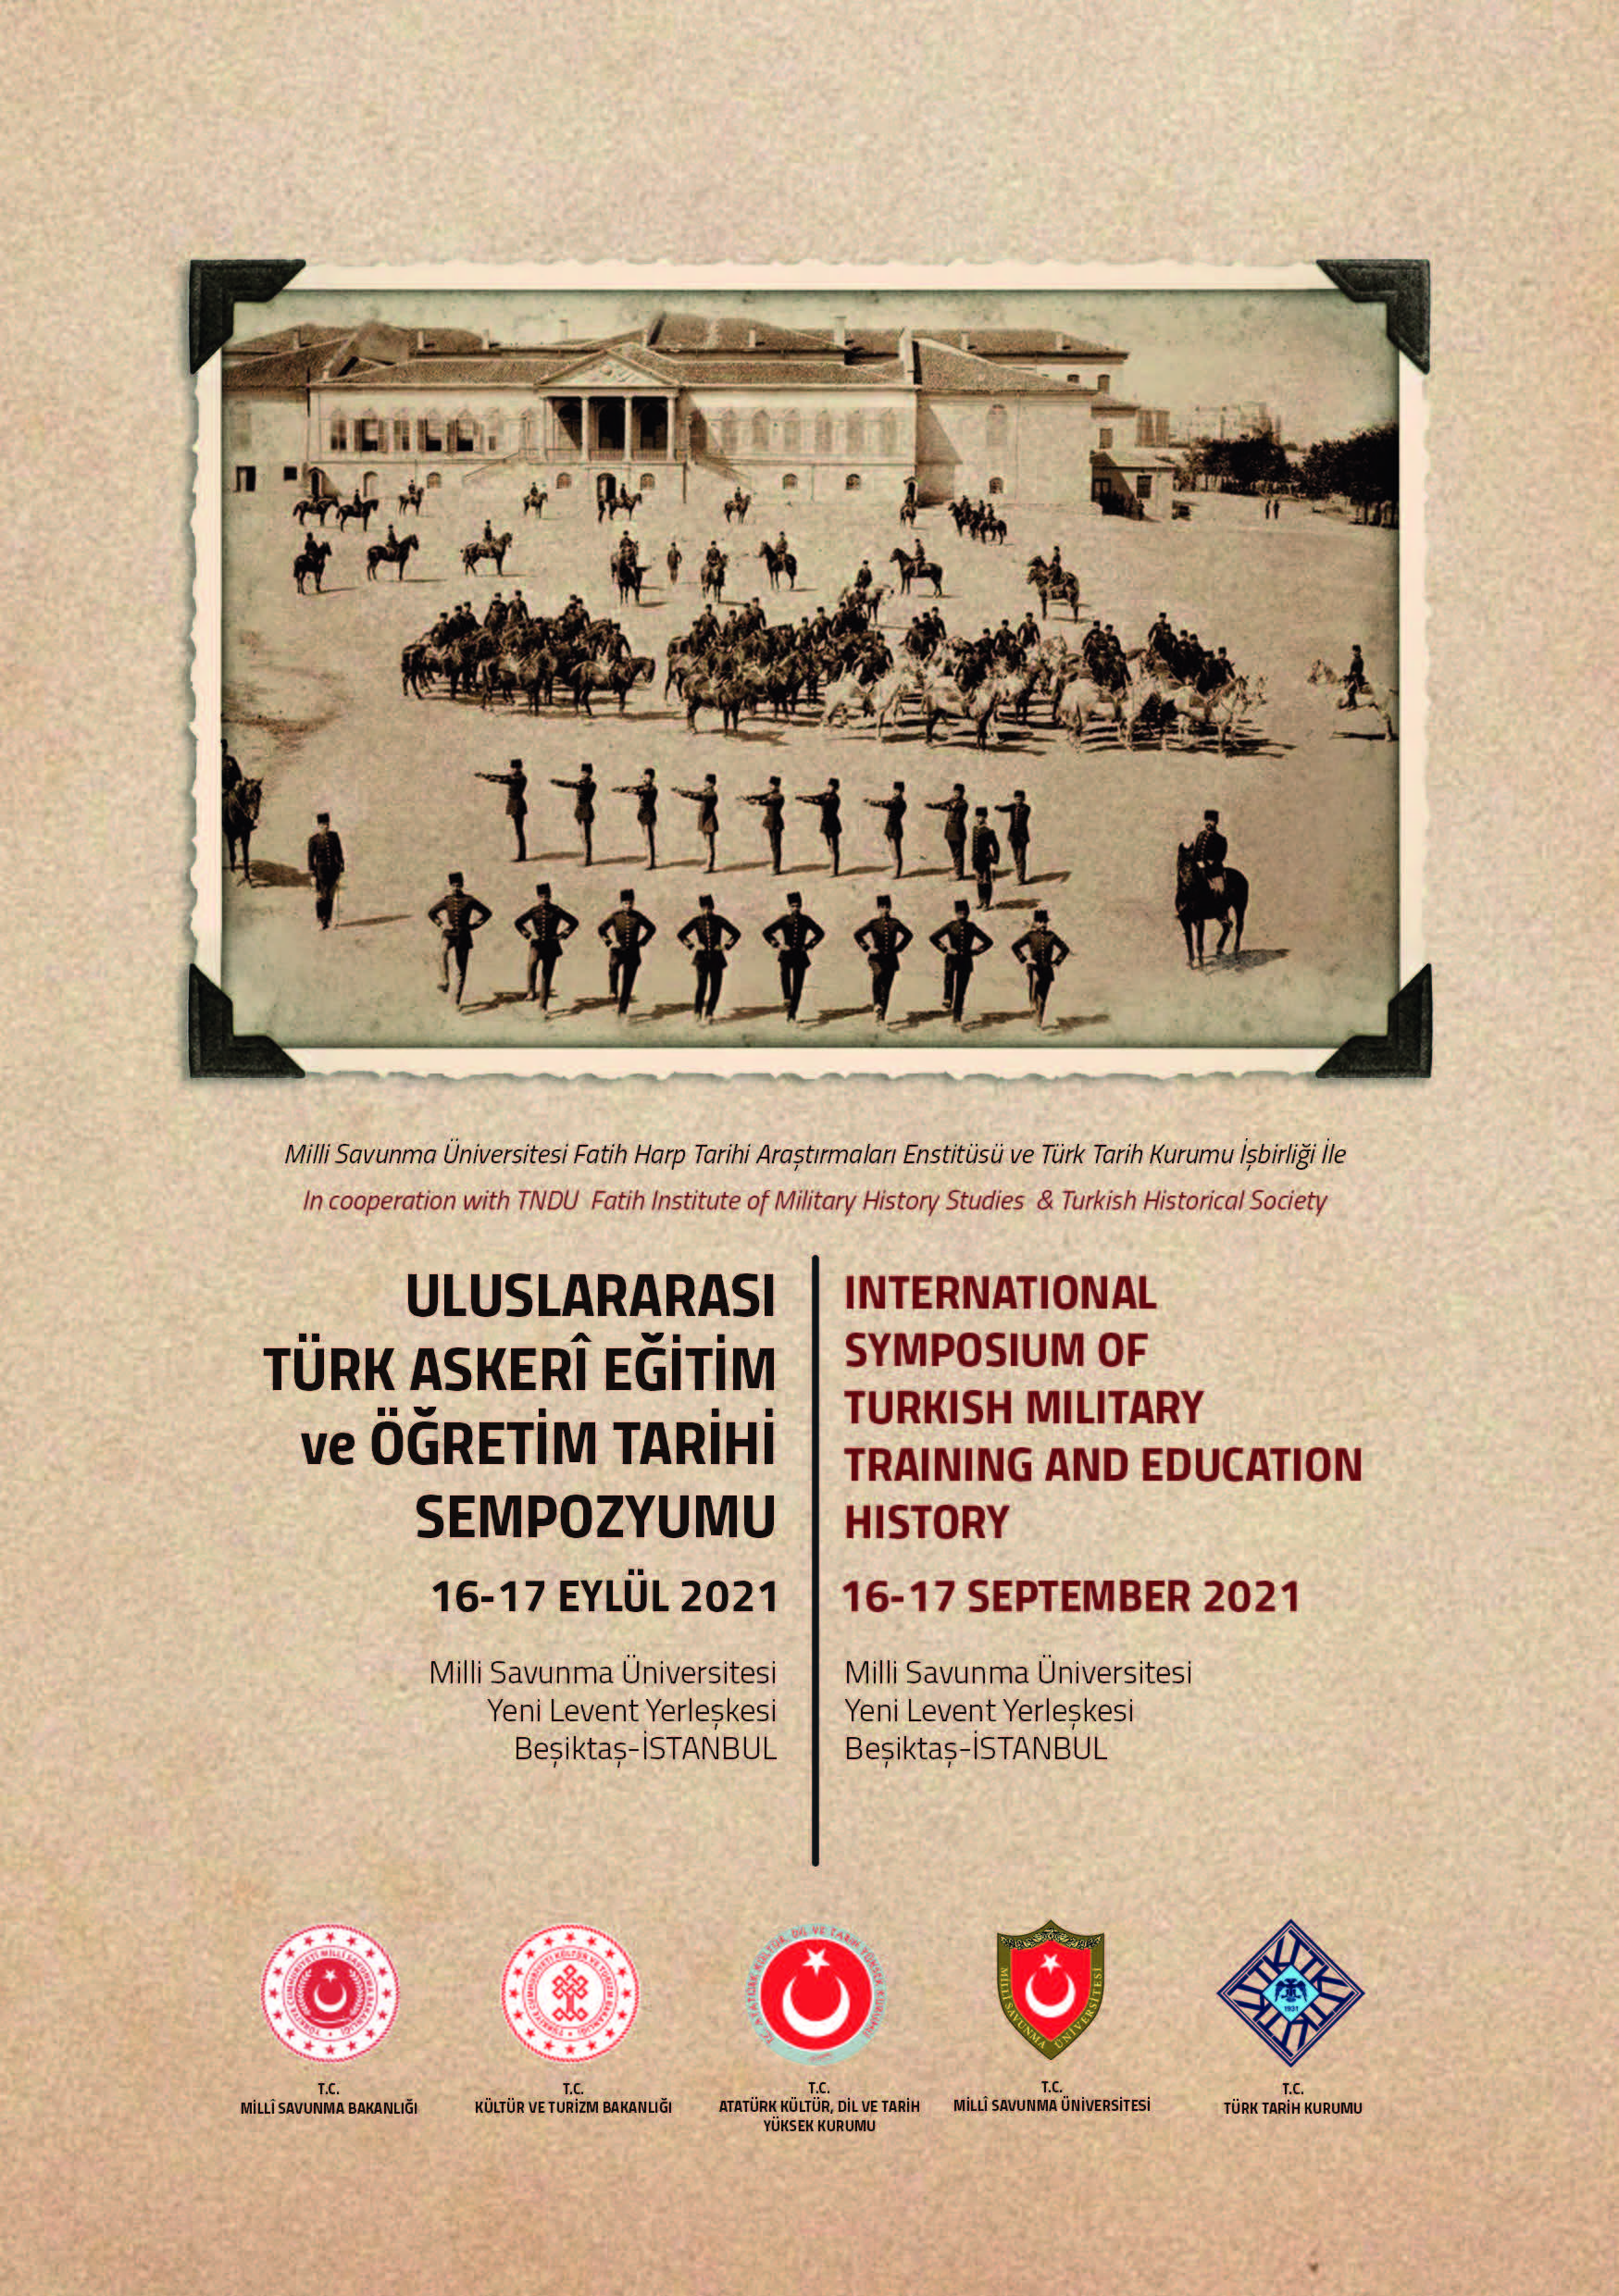 Uluslararası Türk Askerî Eğitim ve Öğretim Tarihi Sempozyumu